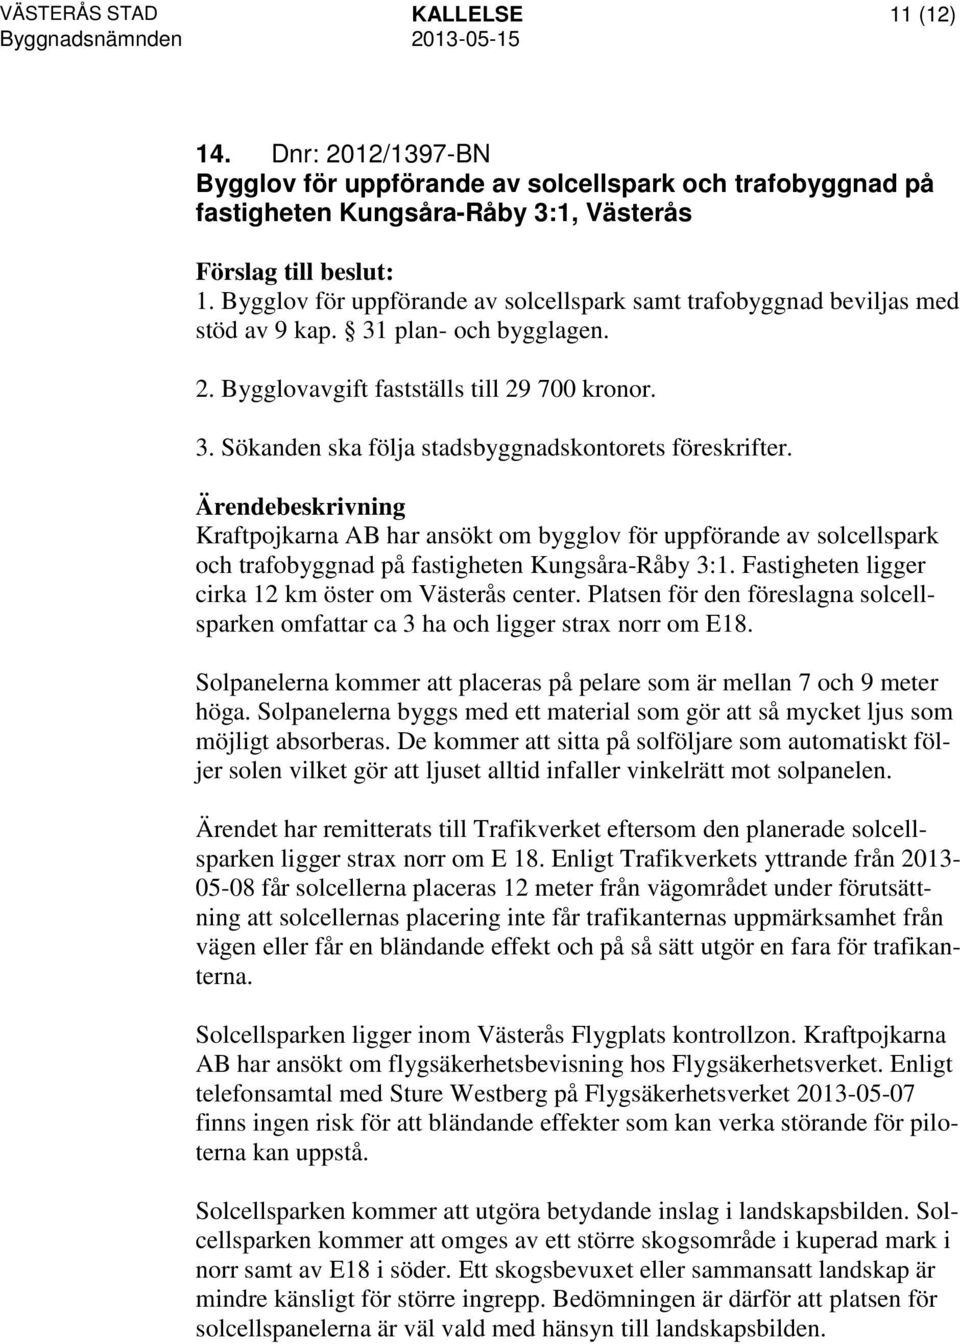 Kraftpojkarna AB har ansökt om bygglov för uppförande av solcellspark och trafobyggnad på fastigheten Kungsåra-Råby 3:1. Fastigheten ligger cirka 12 km öster om Västerås center.